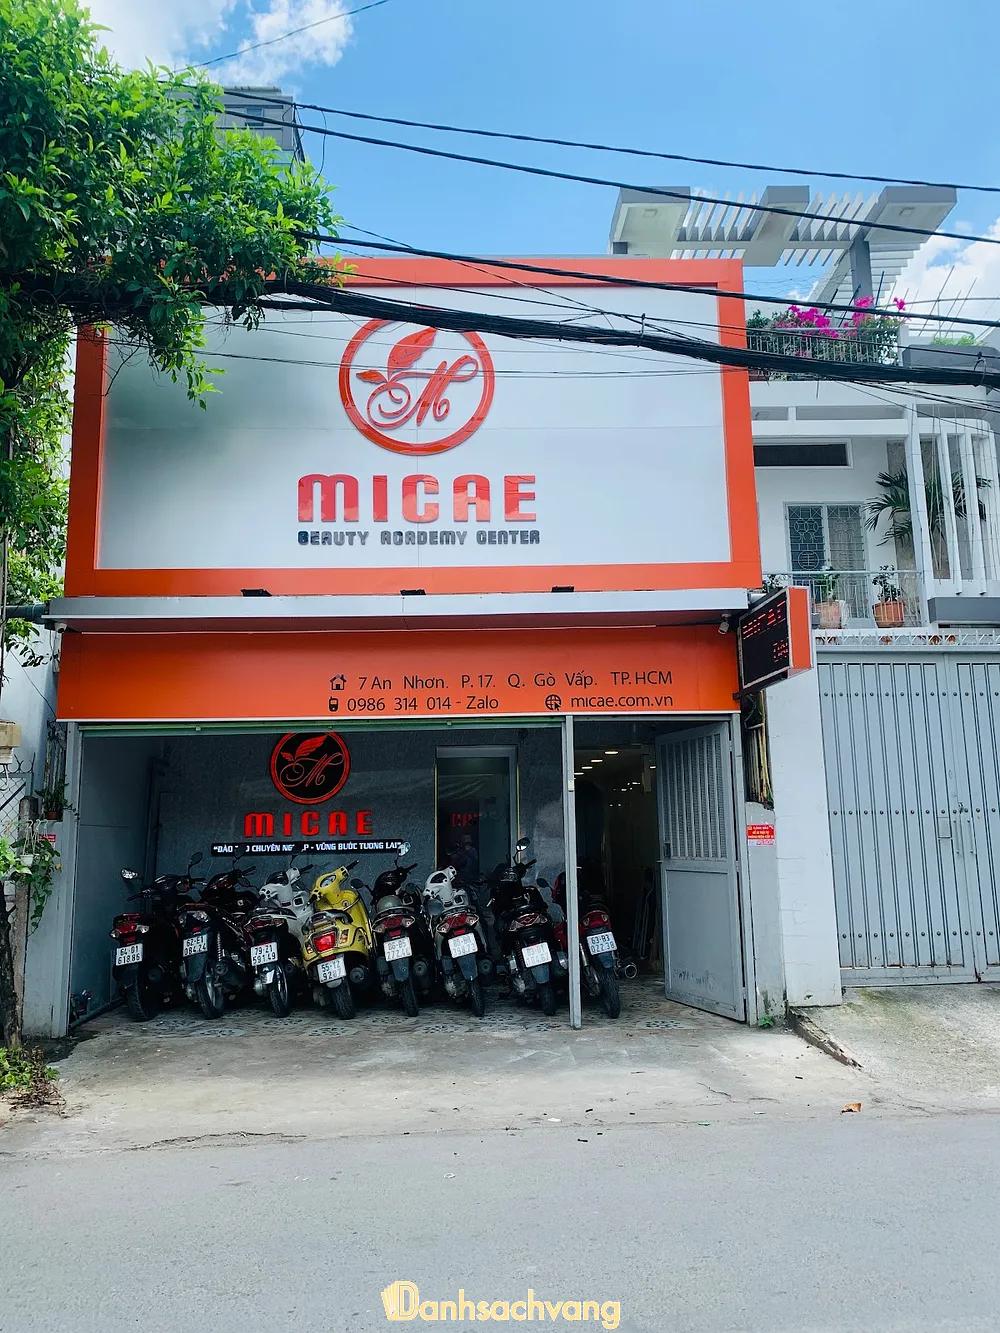 Hình ảnh Học viện Micae - Đào tạo chuyên nghiệp nghề thẩm mỹ: 7 An Nhơn, Quận Gò Vấp